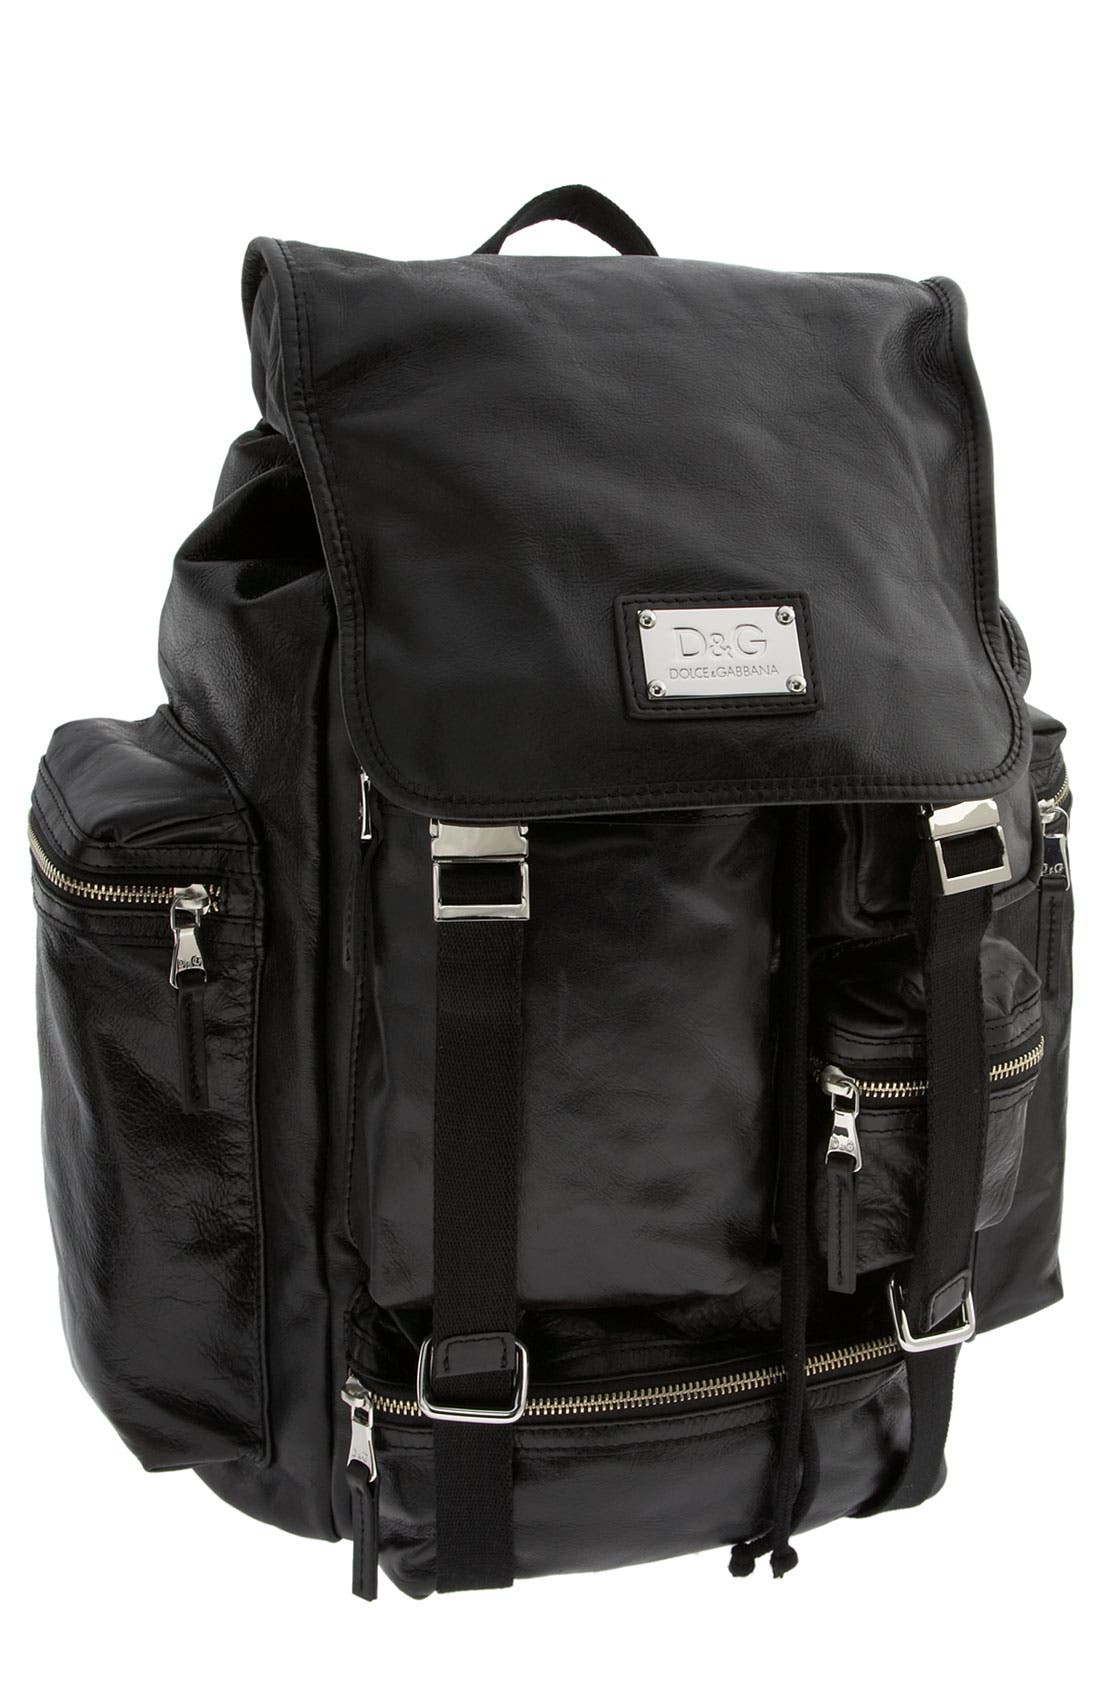 d&g backpack